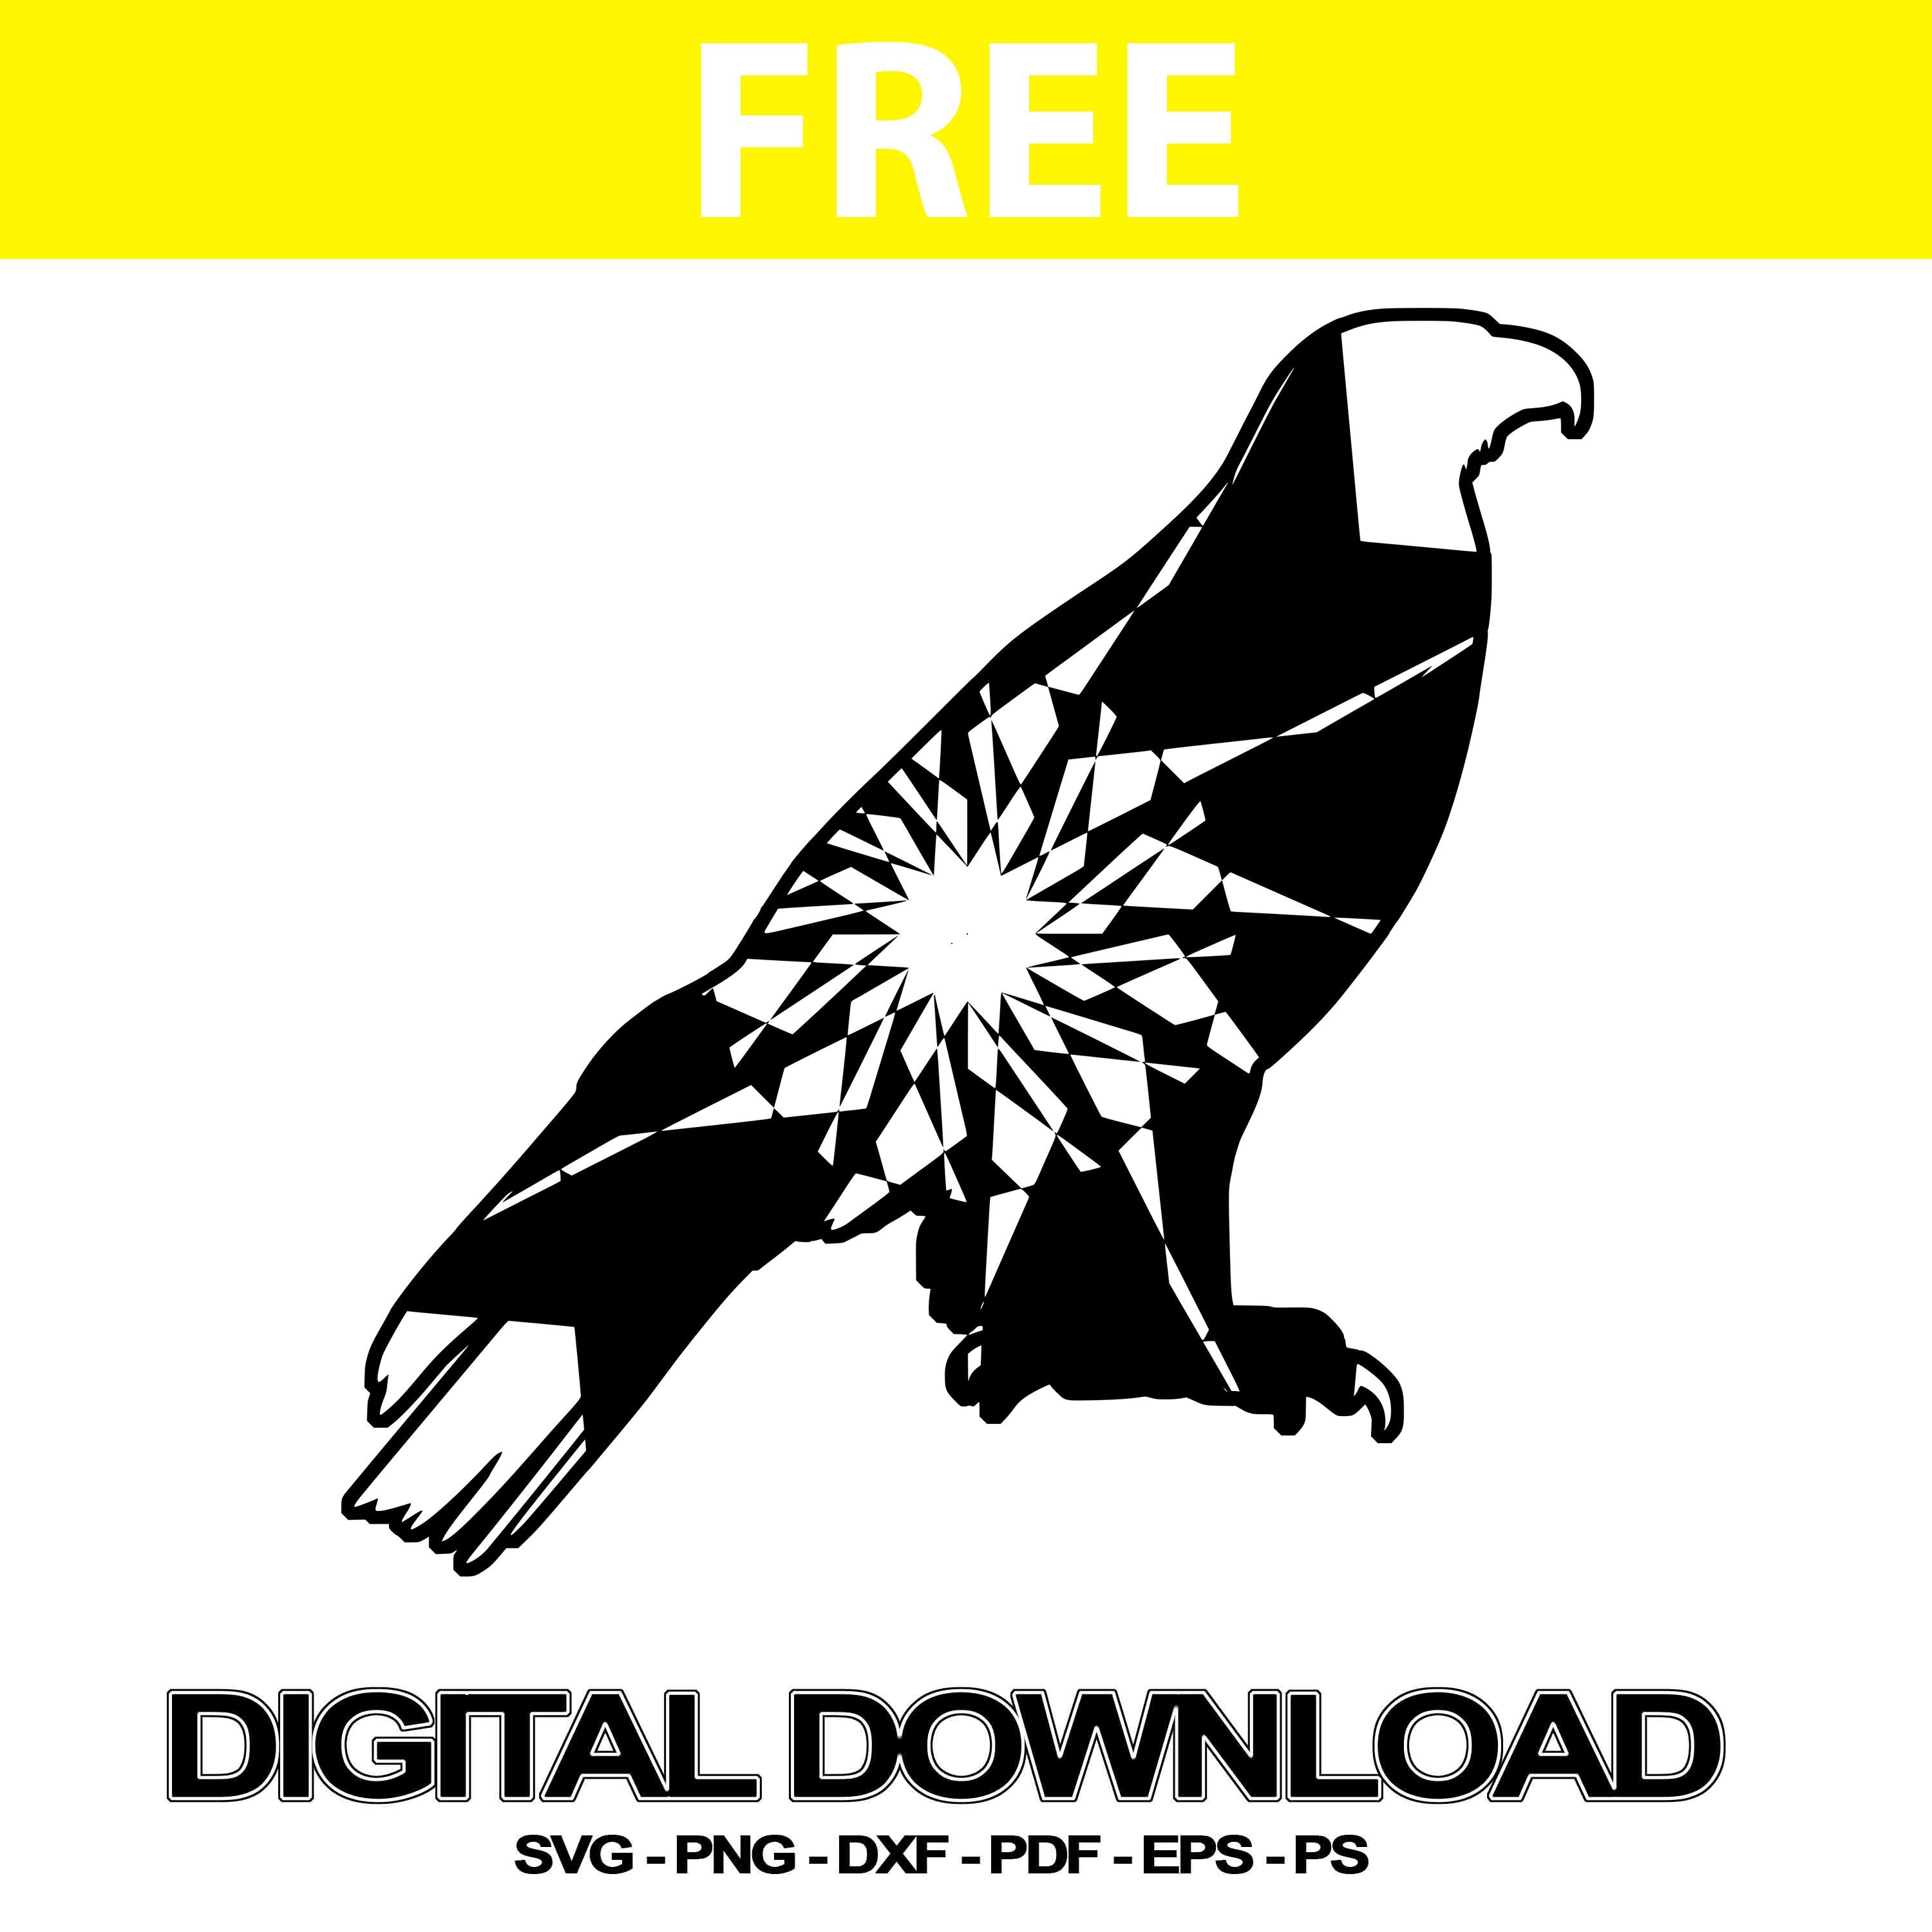 Download Golden Eagle Svgs Files Mandala Images Svg Free Mandalasvg Com